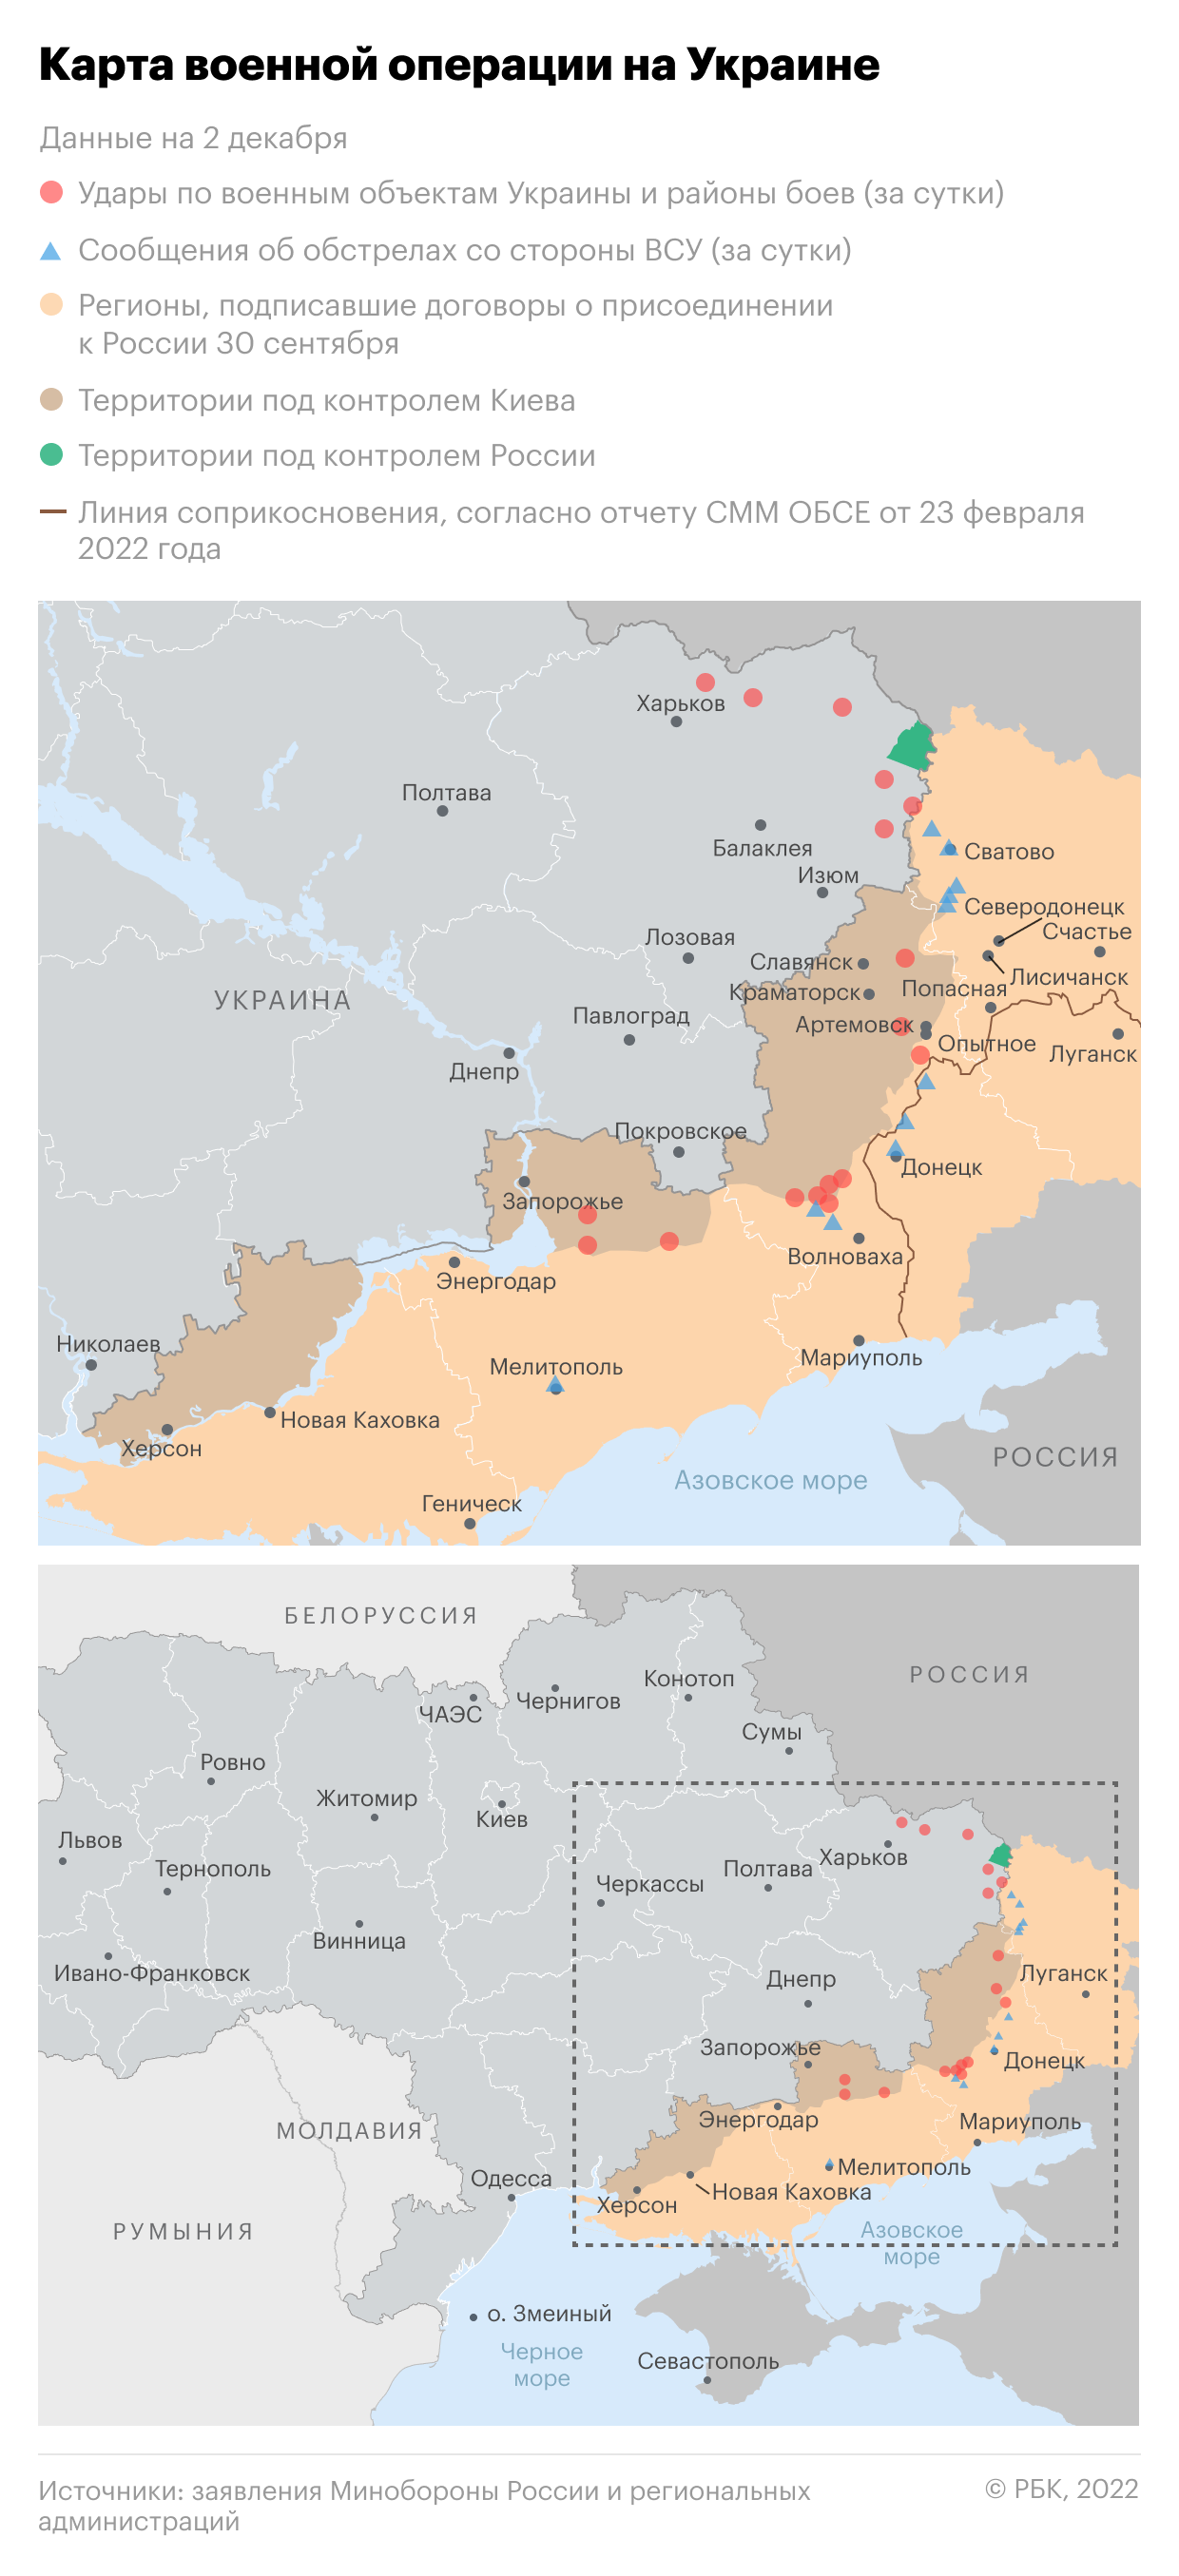 Кремль сообщил о возможности Киева «вывести ситуацию в нормальное русло»